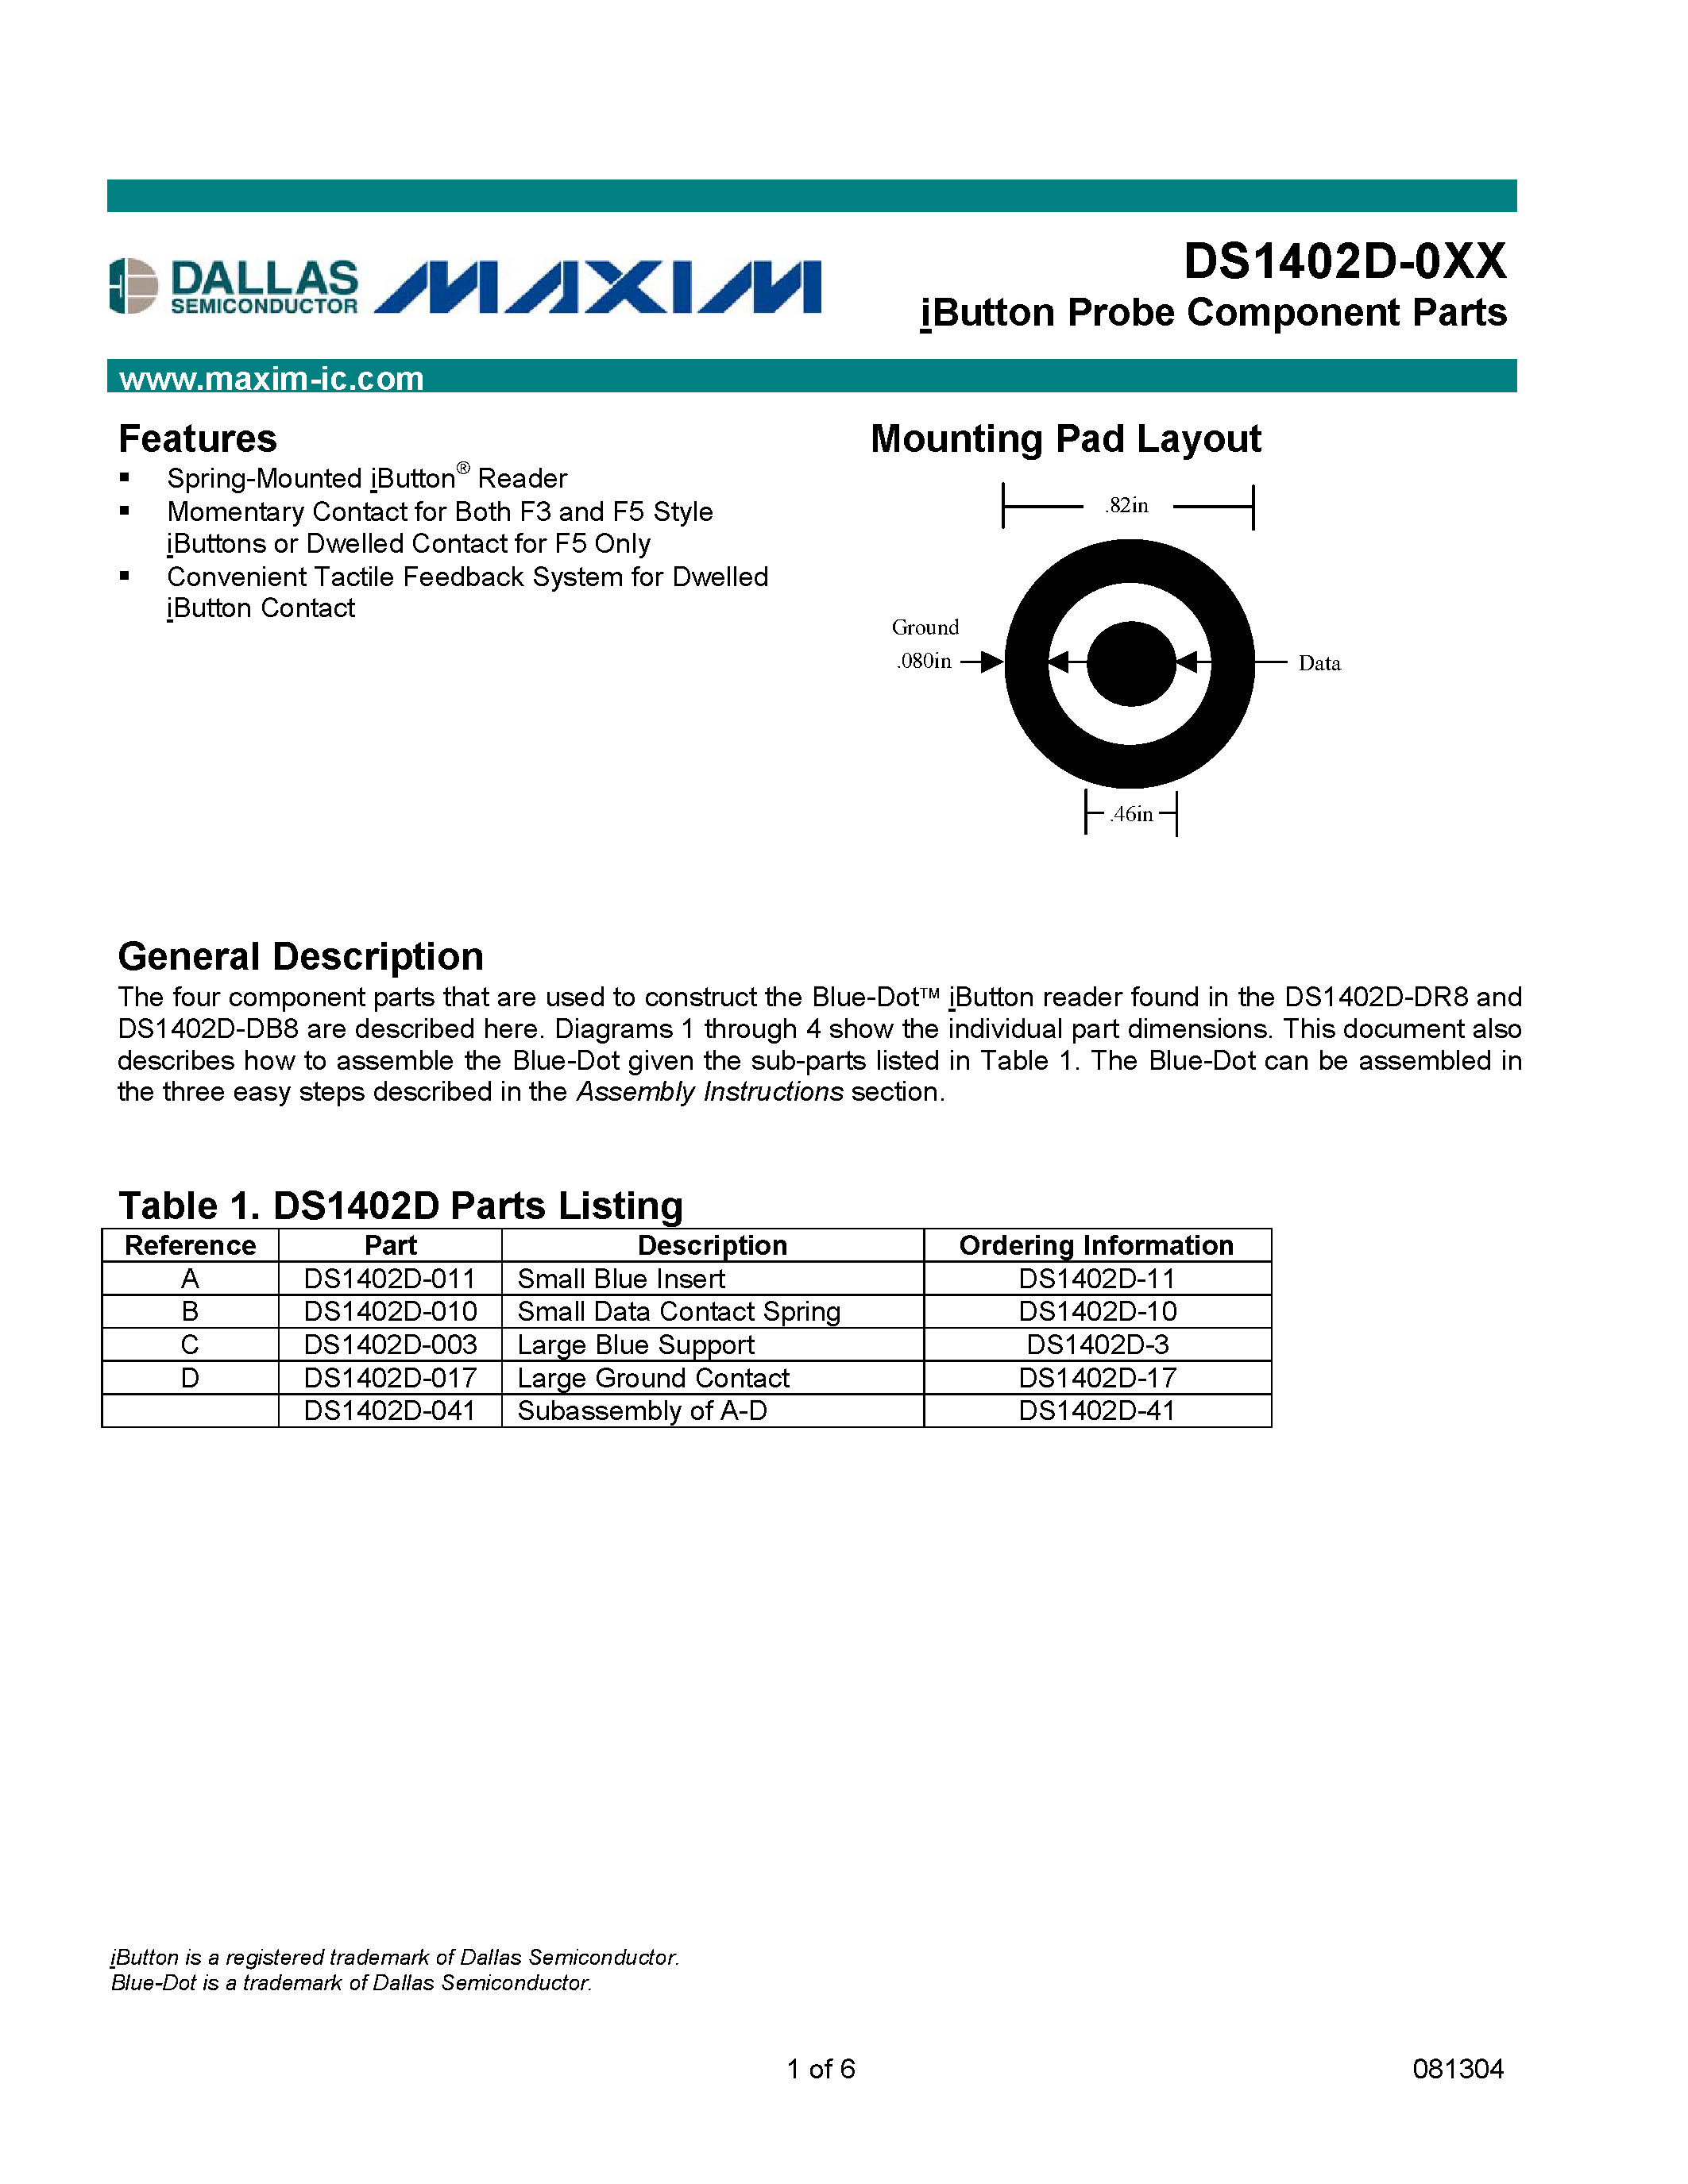 Даташит DS1402D-11 - iButton Probe Component Parts страница 1